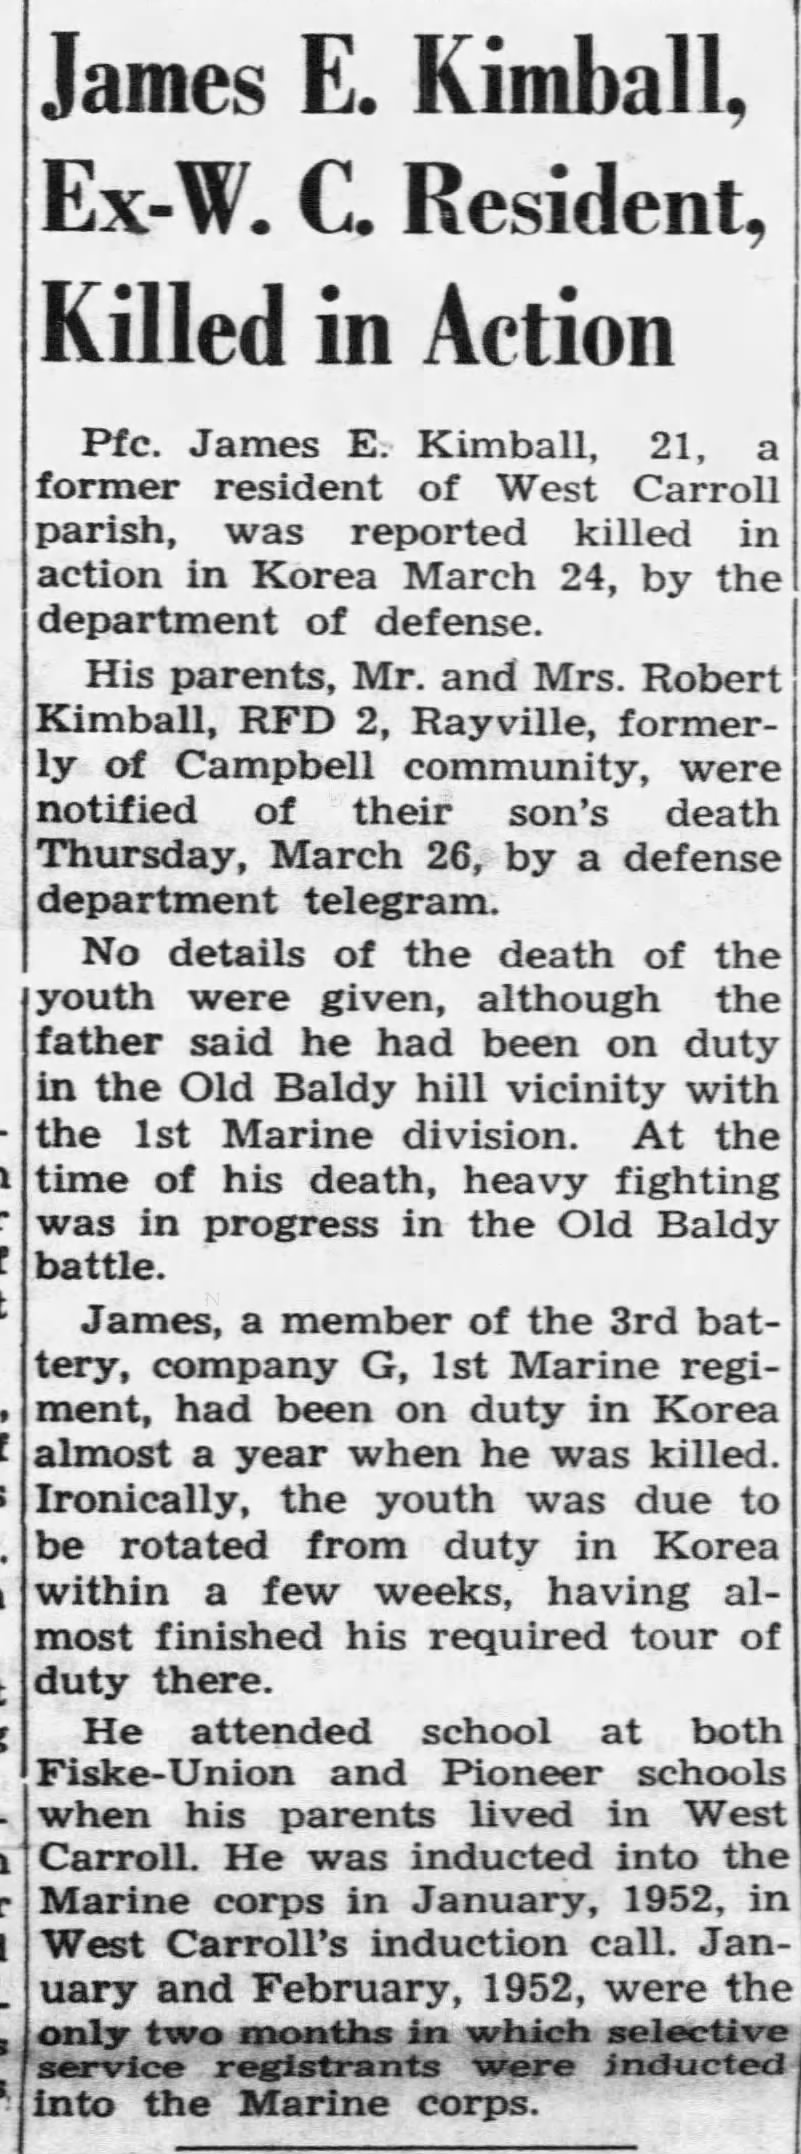 James E. Kimball KIA - Korean War